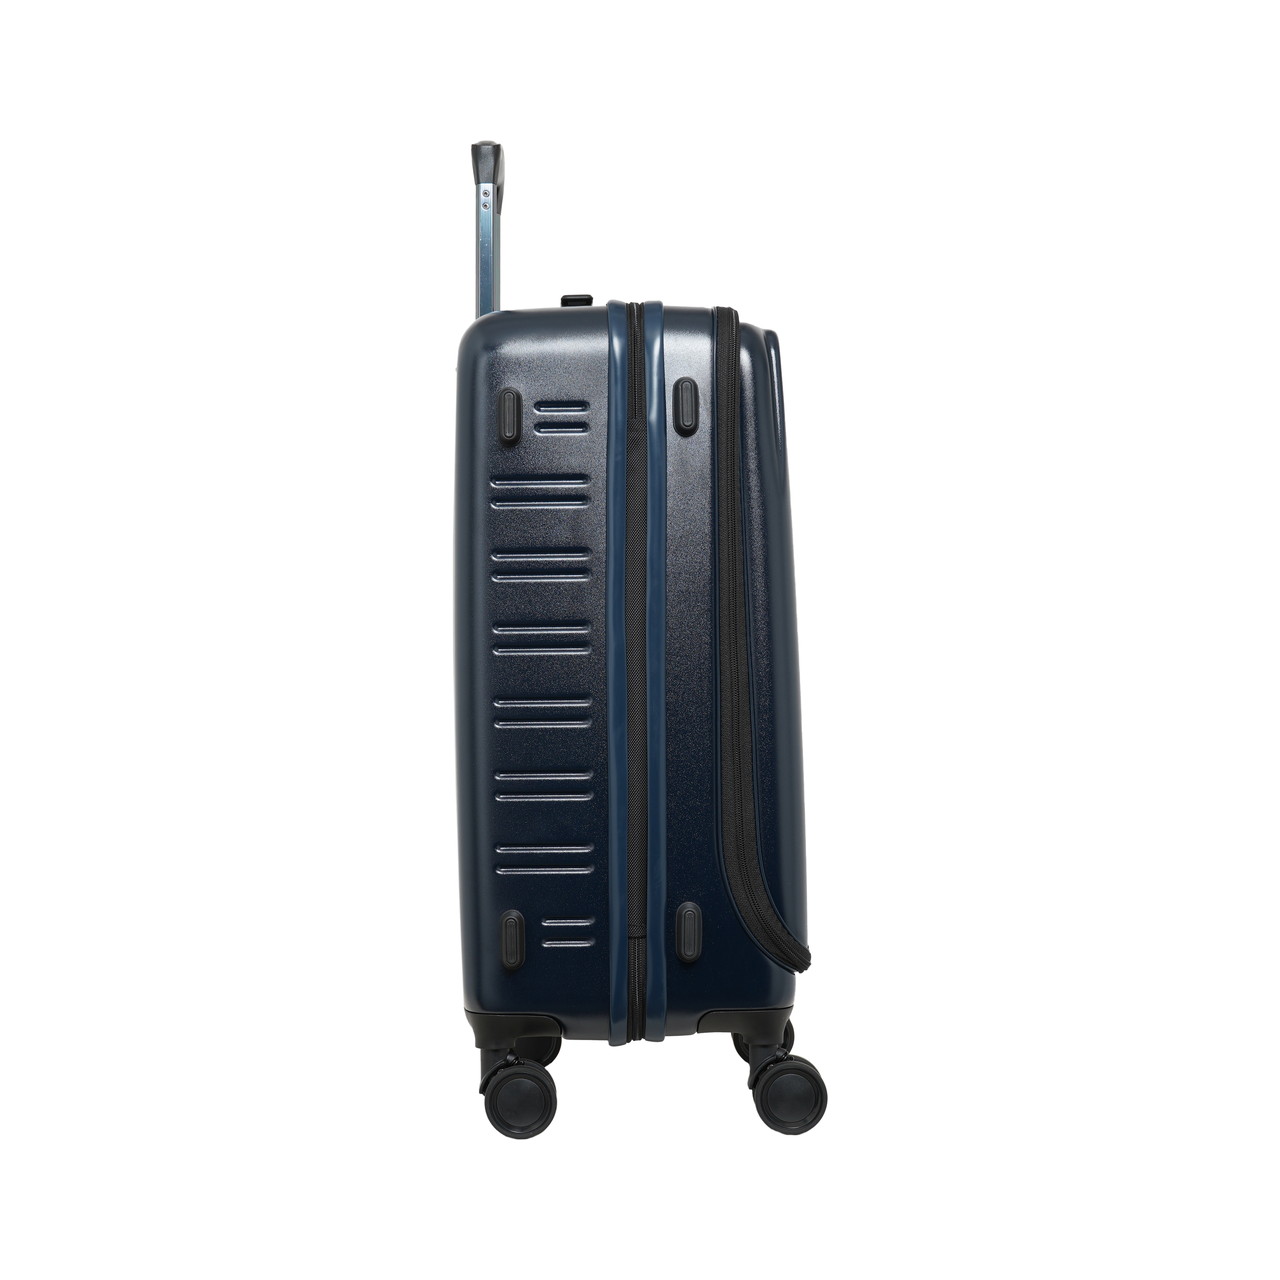 SKYNAVIGATORのスーツケースSK-0839-56のサイド